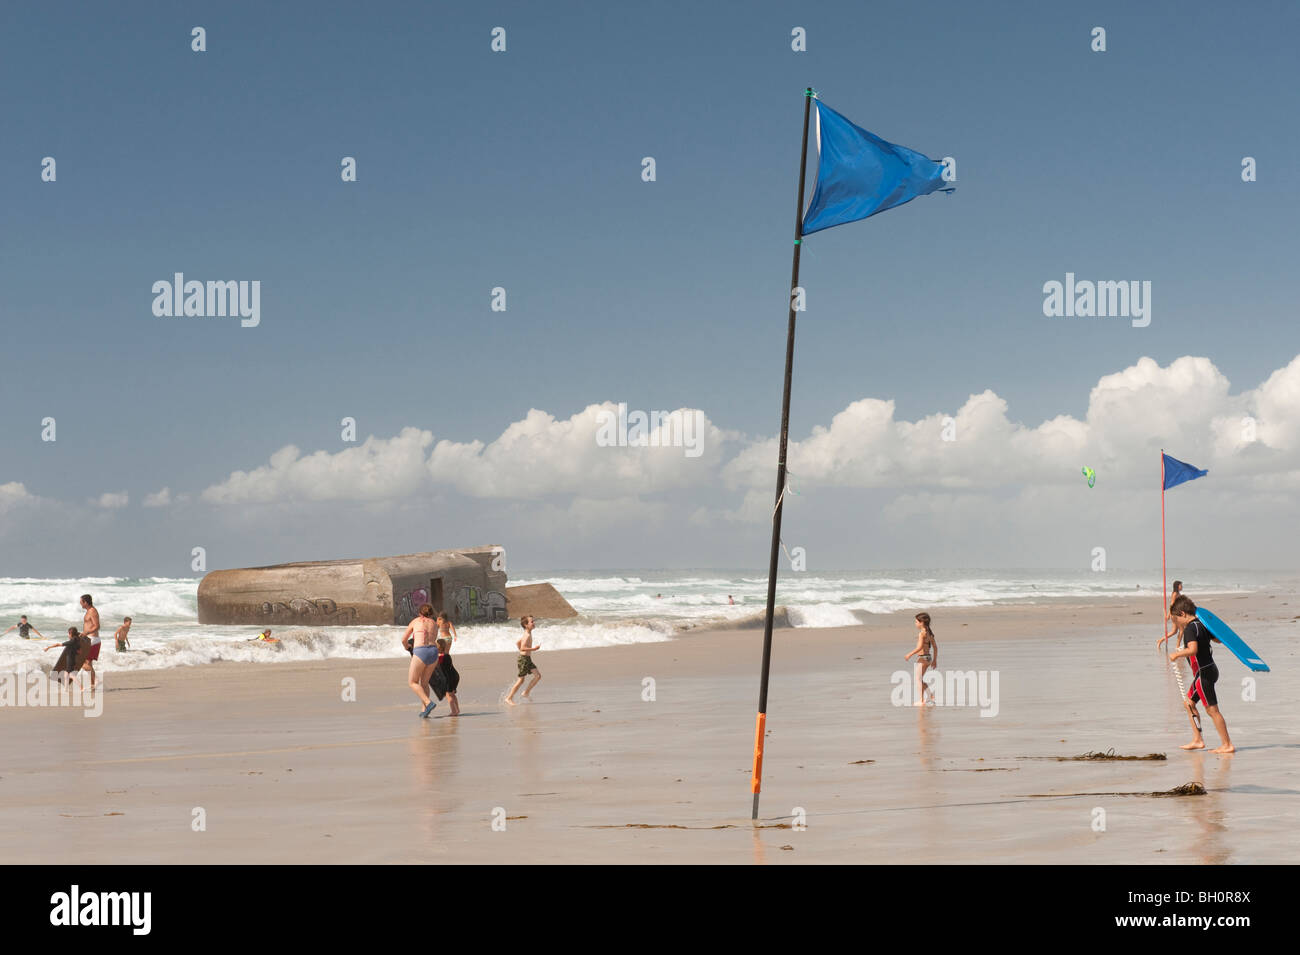 Bandiere blu battenti per una nuotata in mare a Plage de Tronoan, Penmarc'h, sud della Bretagna, Francia. Foto Stock